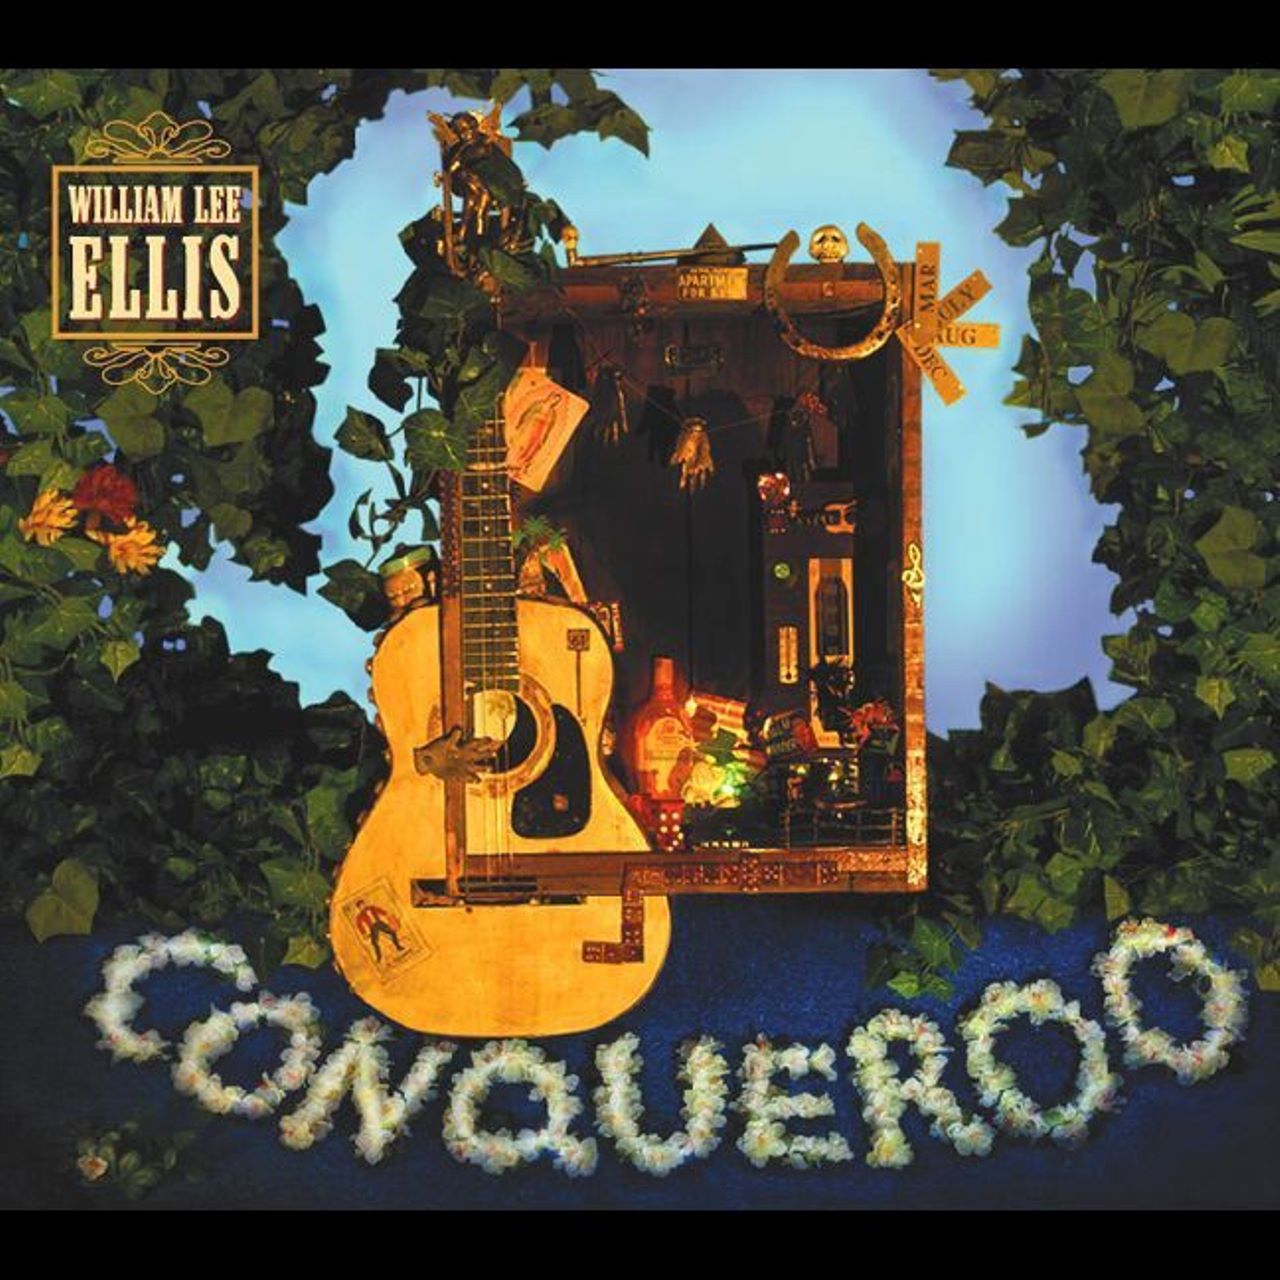 William Lee Ellis - Conqueroo cover album